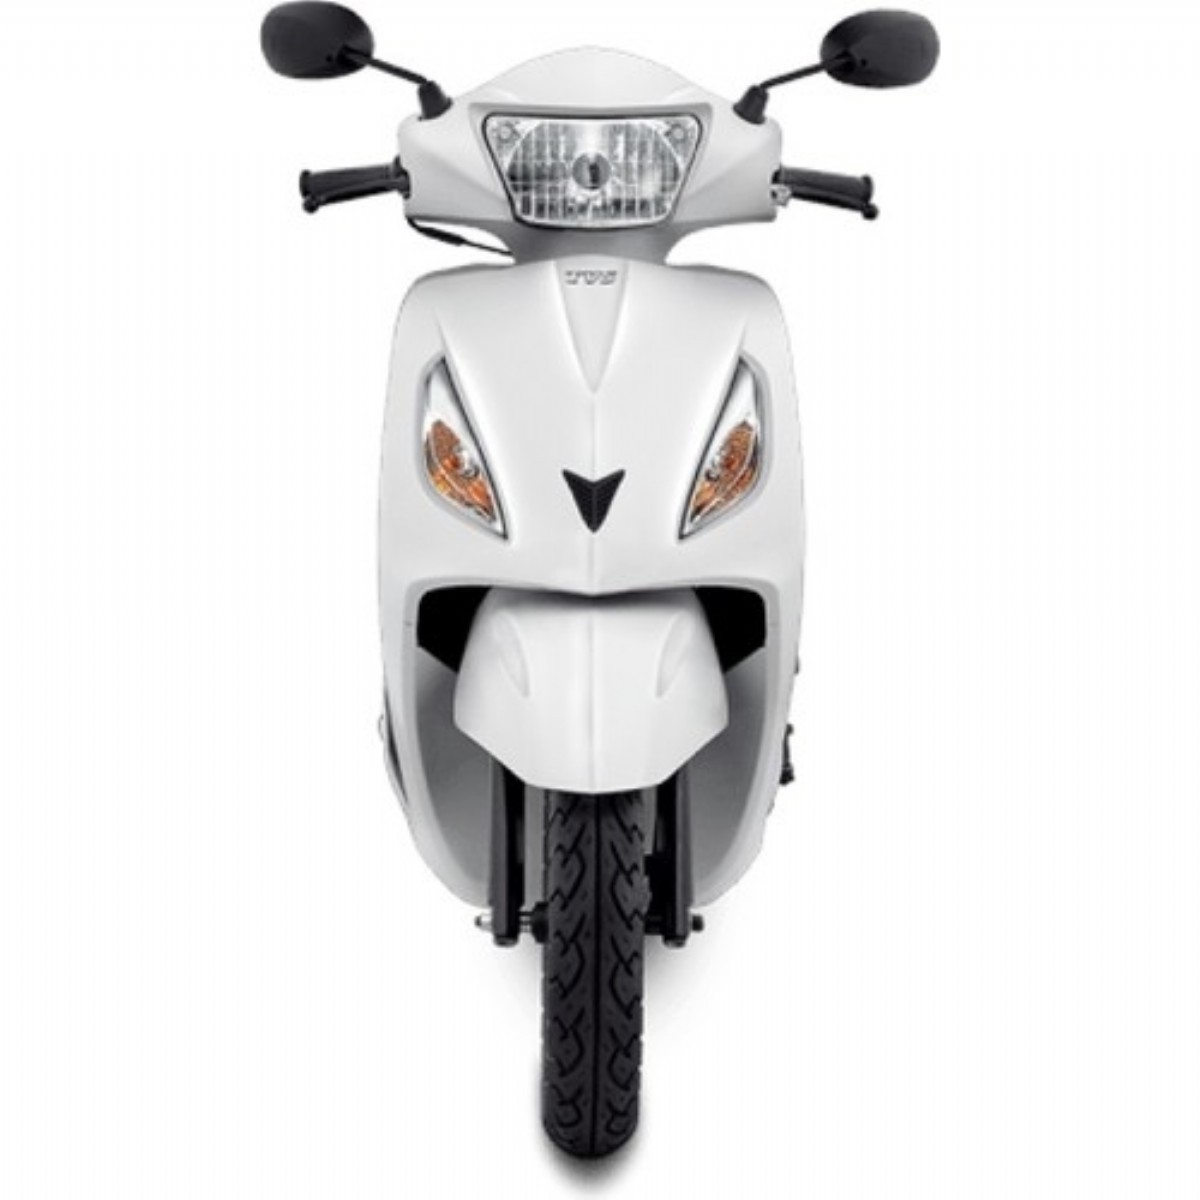 Motosikletler | Tvs 110 cc Jupiter Beyaz Motosiklet | M3TVS7001A0005 | Tvs 110 cc Jupiter Beyaz Motosiklet motor motorsiklet, jupiter 110 fiyat, en ucuz tvs jupiter, tvs izmir | 